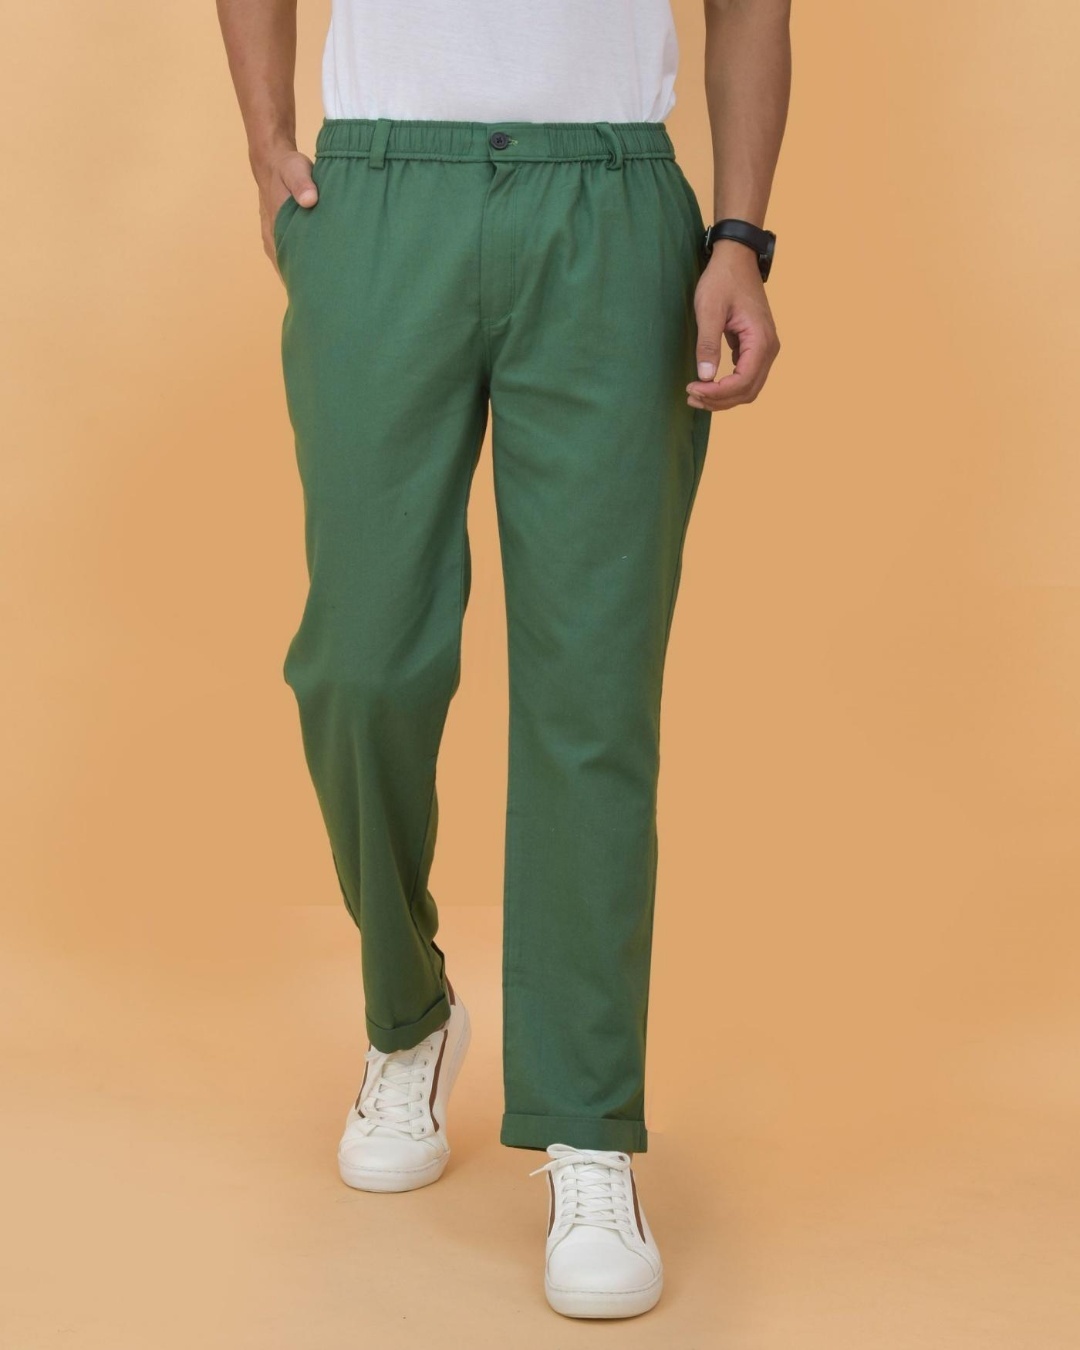 Buy Men Green Slim Fit Stripe Casual Trousers Online  803346  Allen Solly